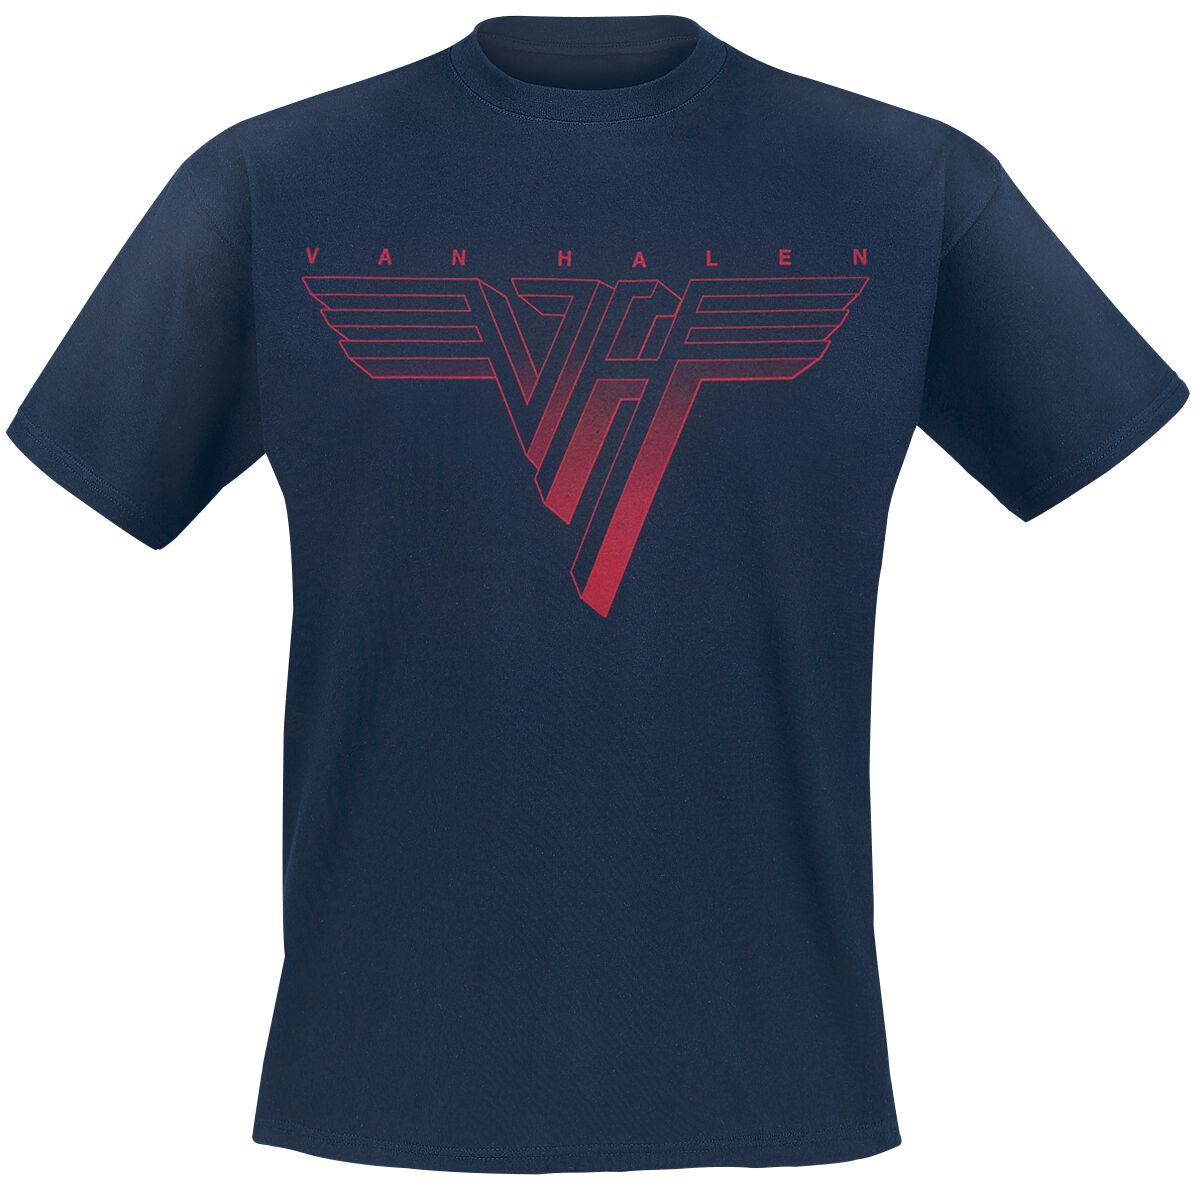 Van Halen T-Shirt - Classic Red Logo - S bis 3XL - für Männer - Größe XXL - navy  - Lizenziertes Merchandise!